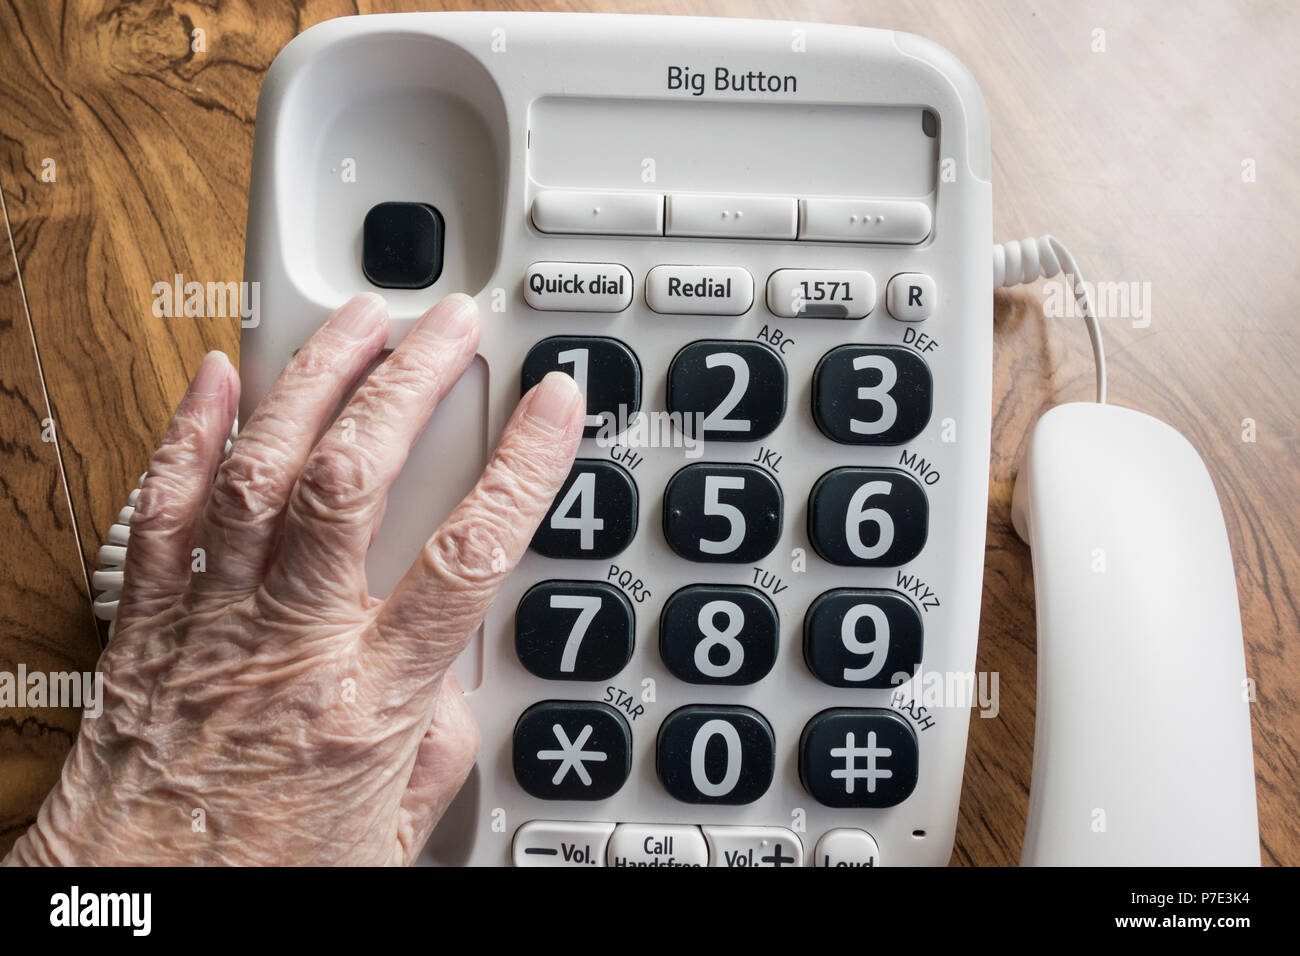 Personnes ayant une femme âgée NHS composition 111 help line sur gros bouton Téléphone. Banque D'Images